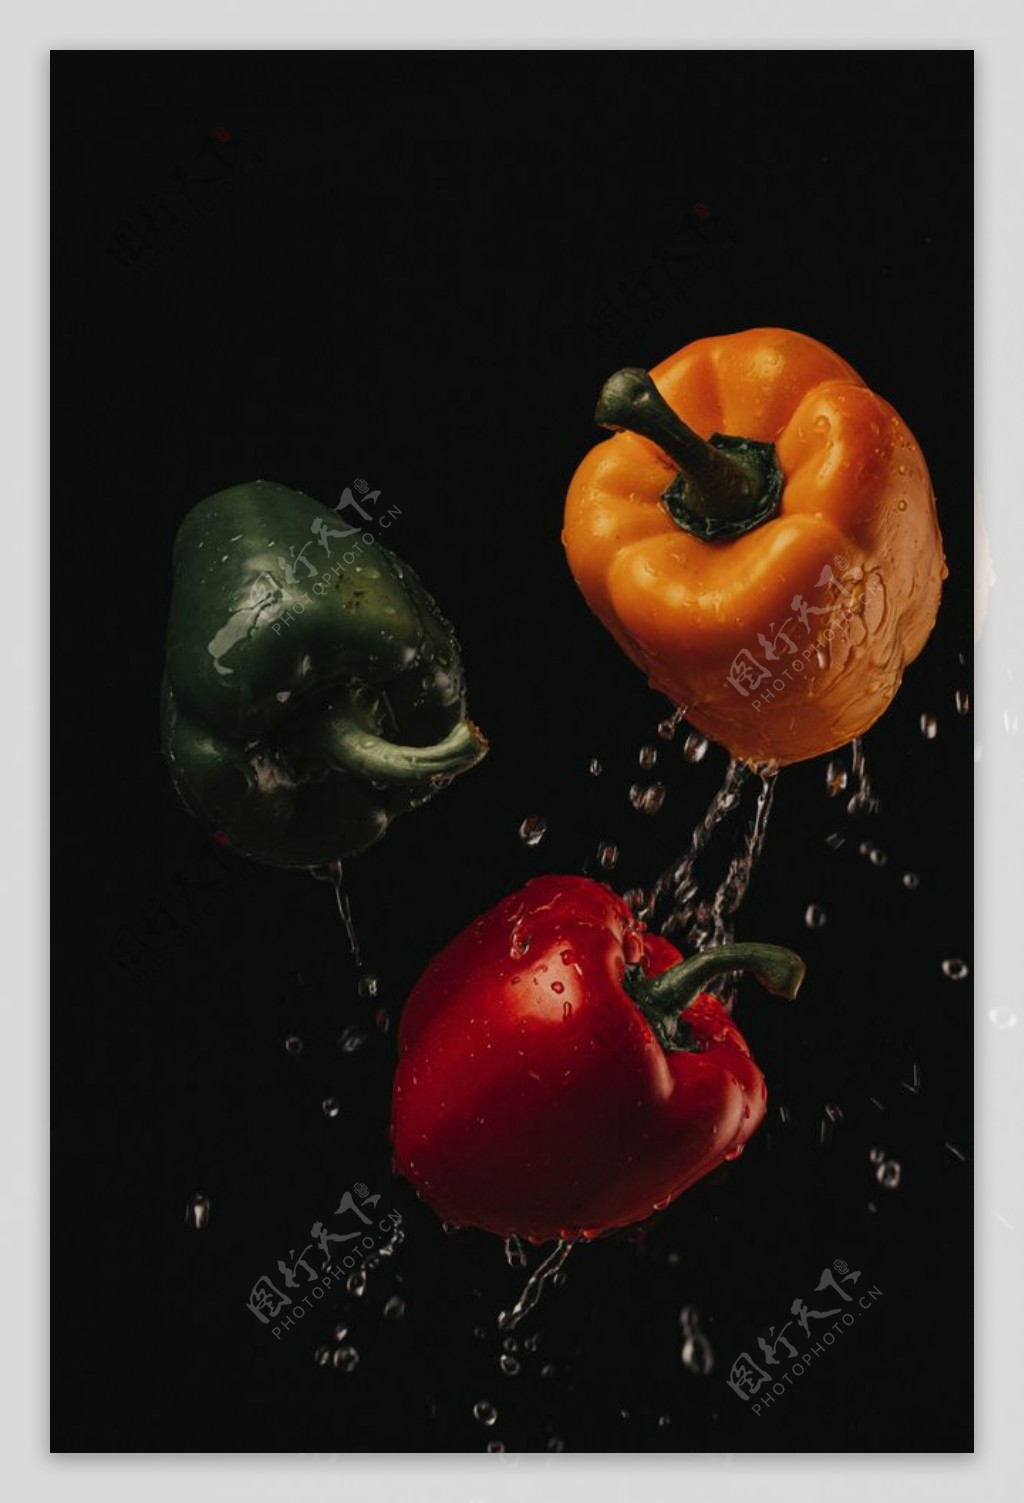 柿子椒图片